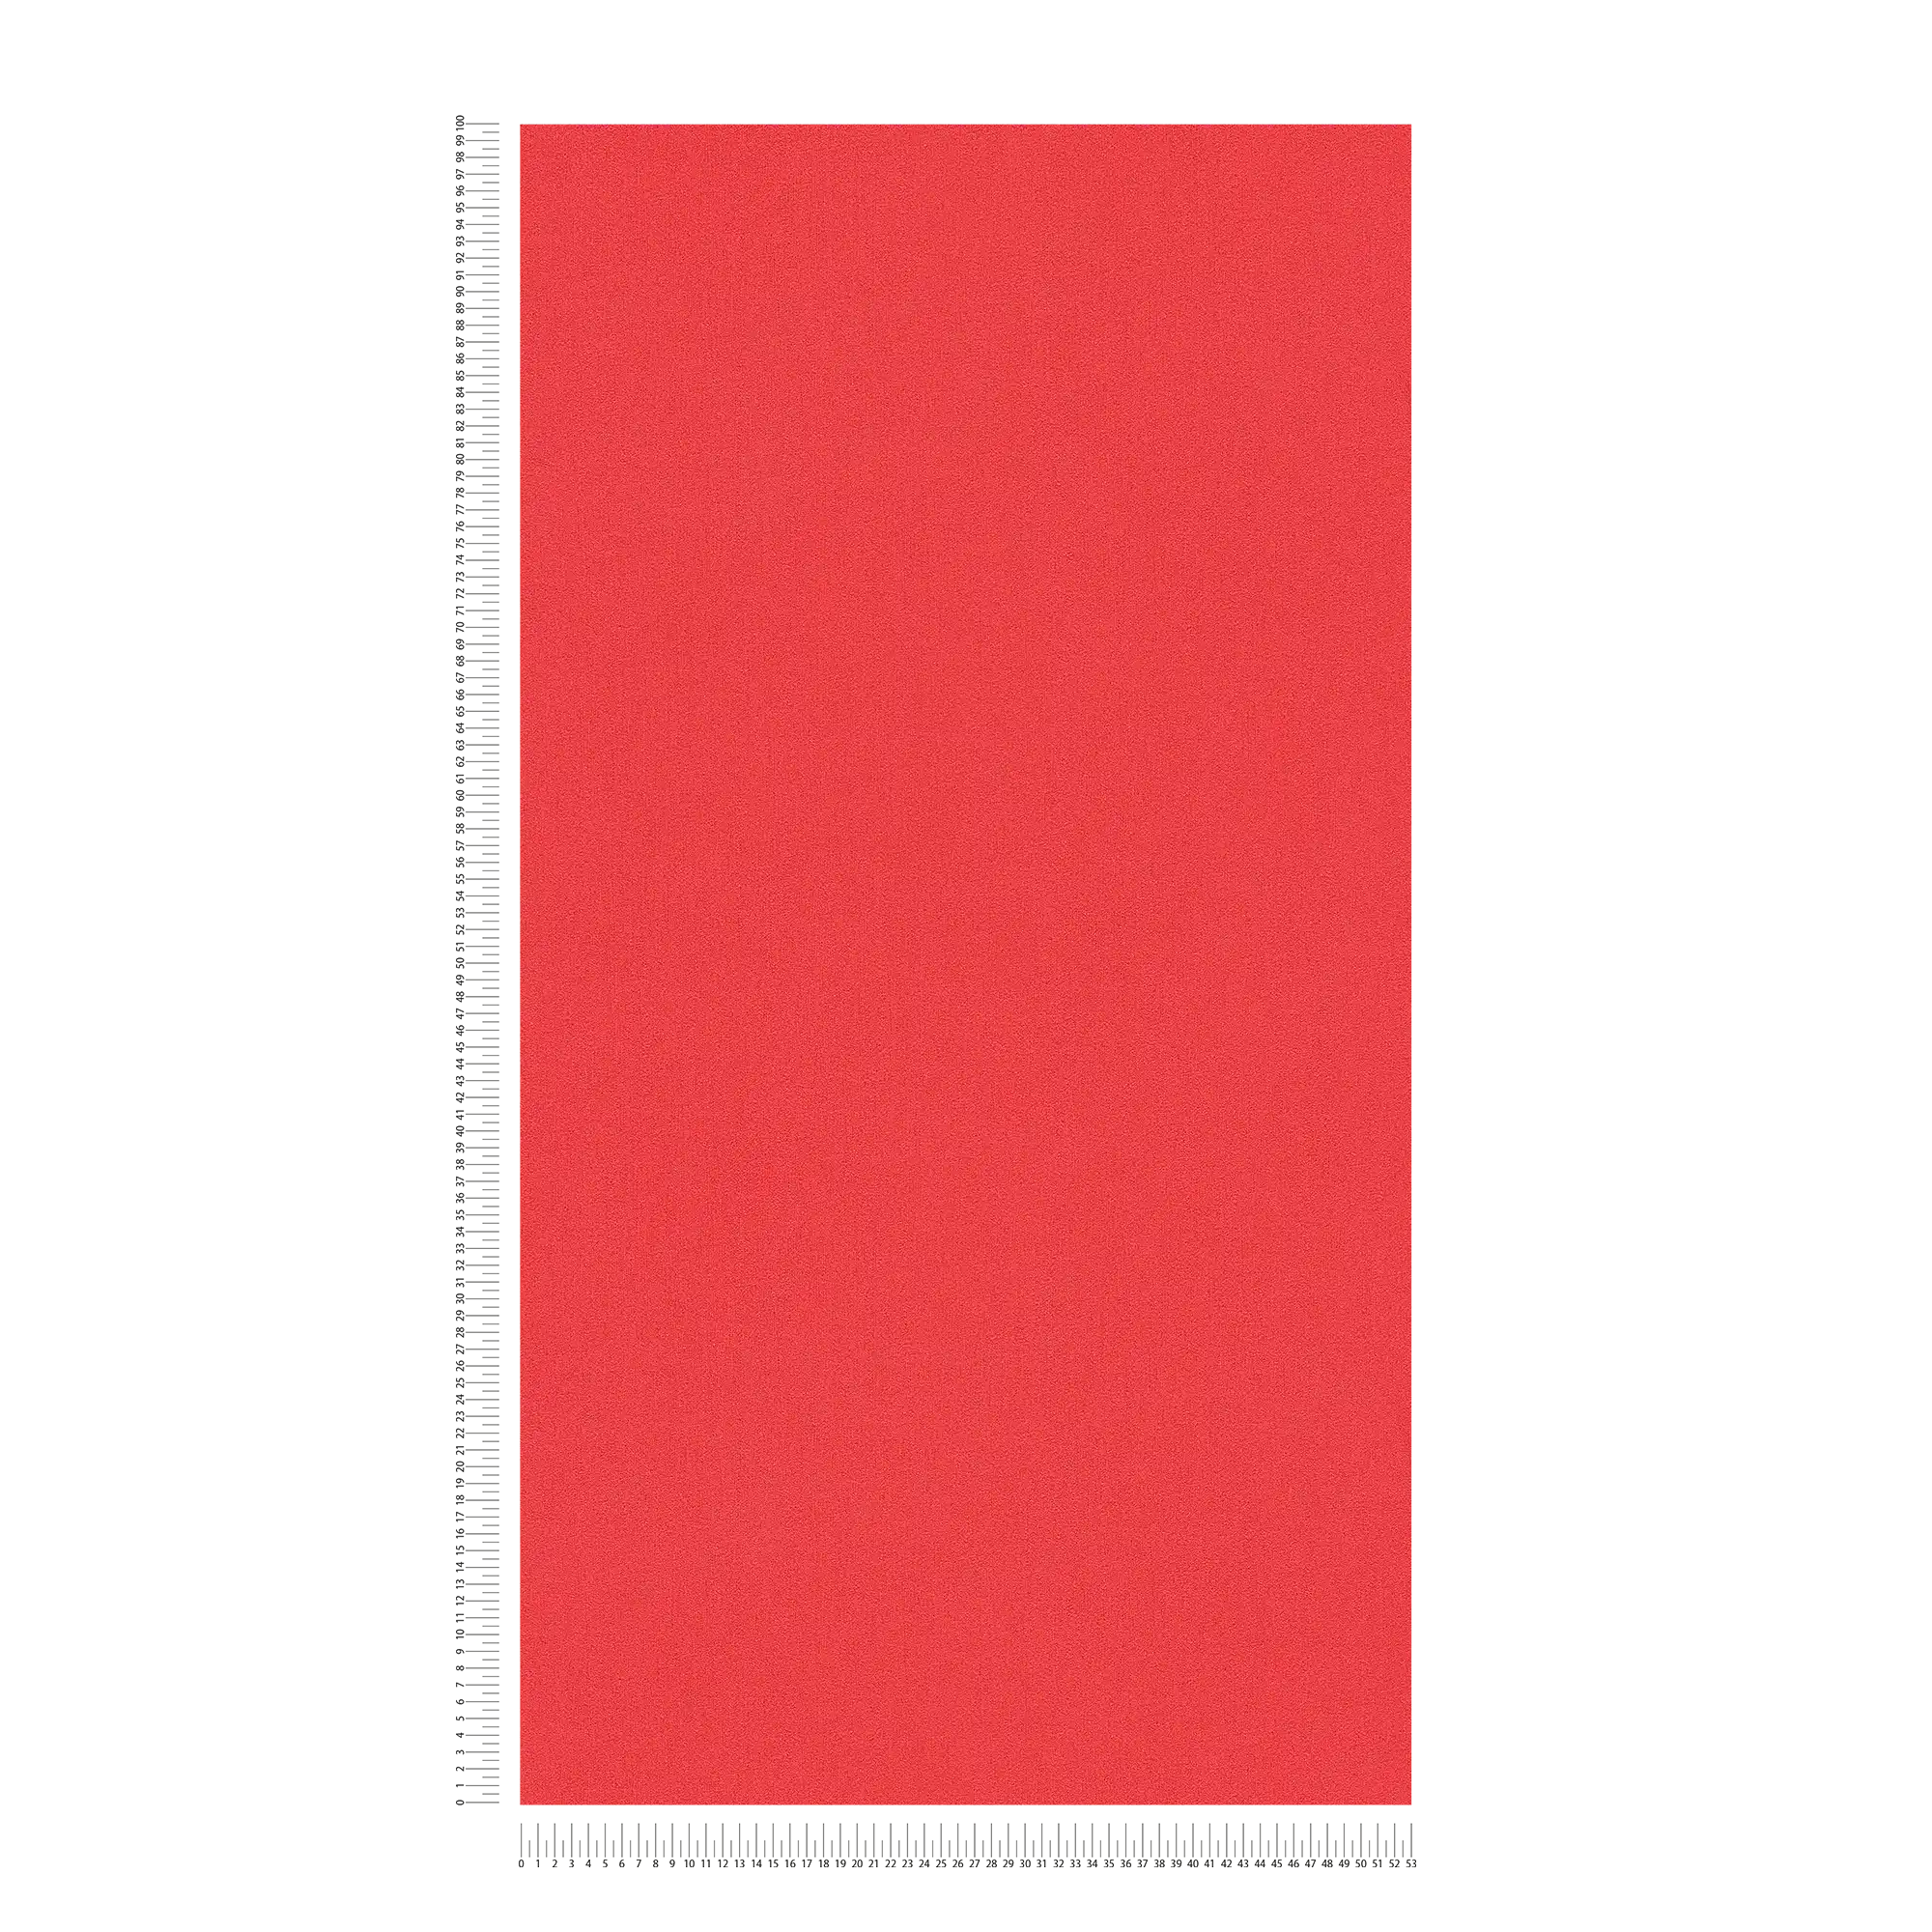             Papel pintado unitario Karl LAGERFELD con estructura en relieve - rojo
        